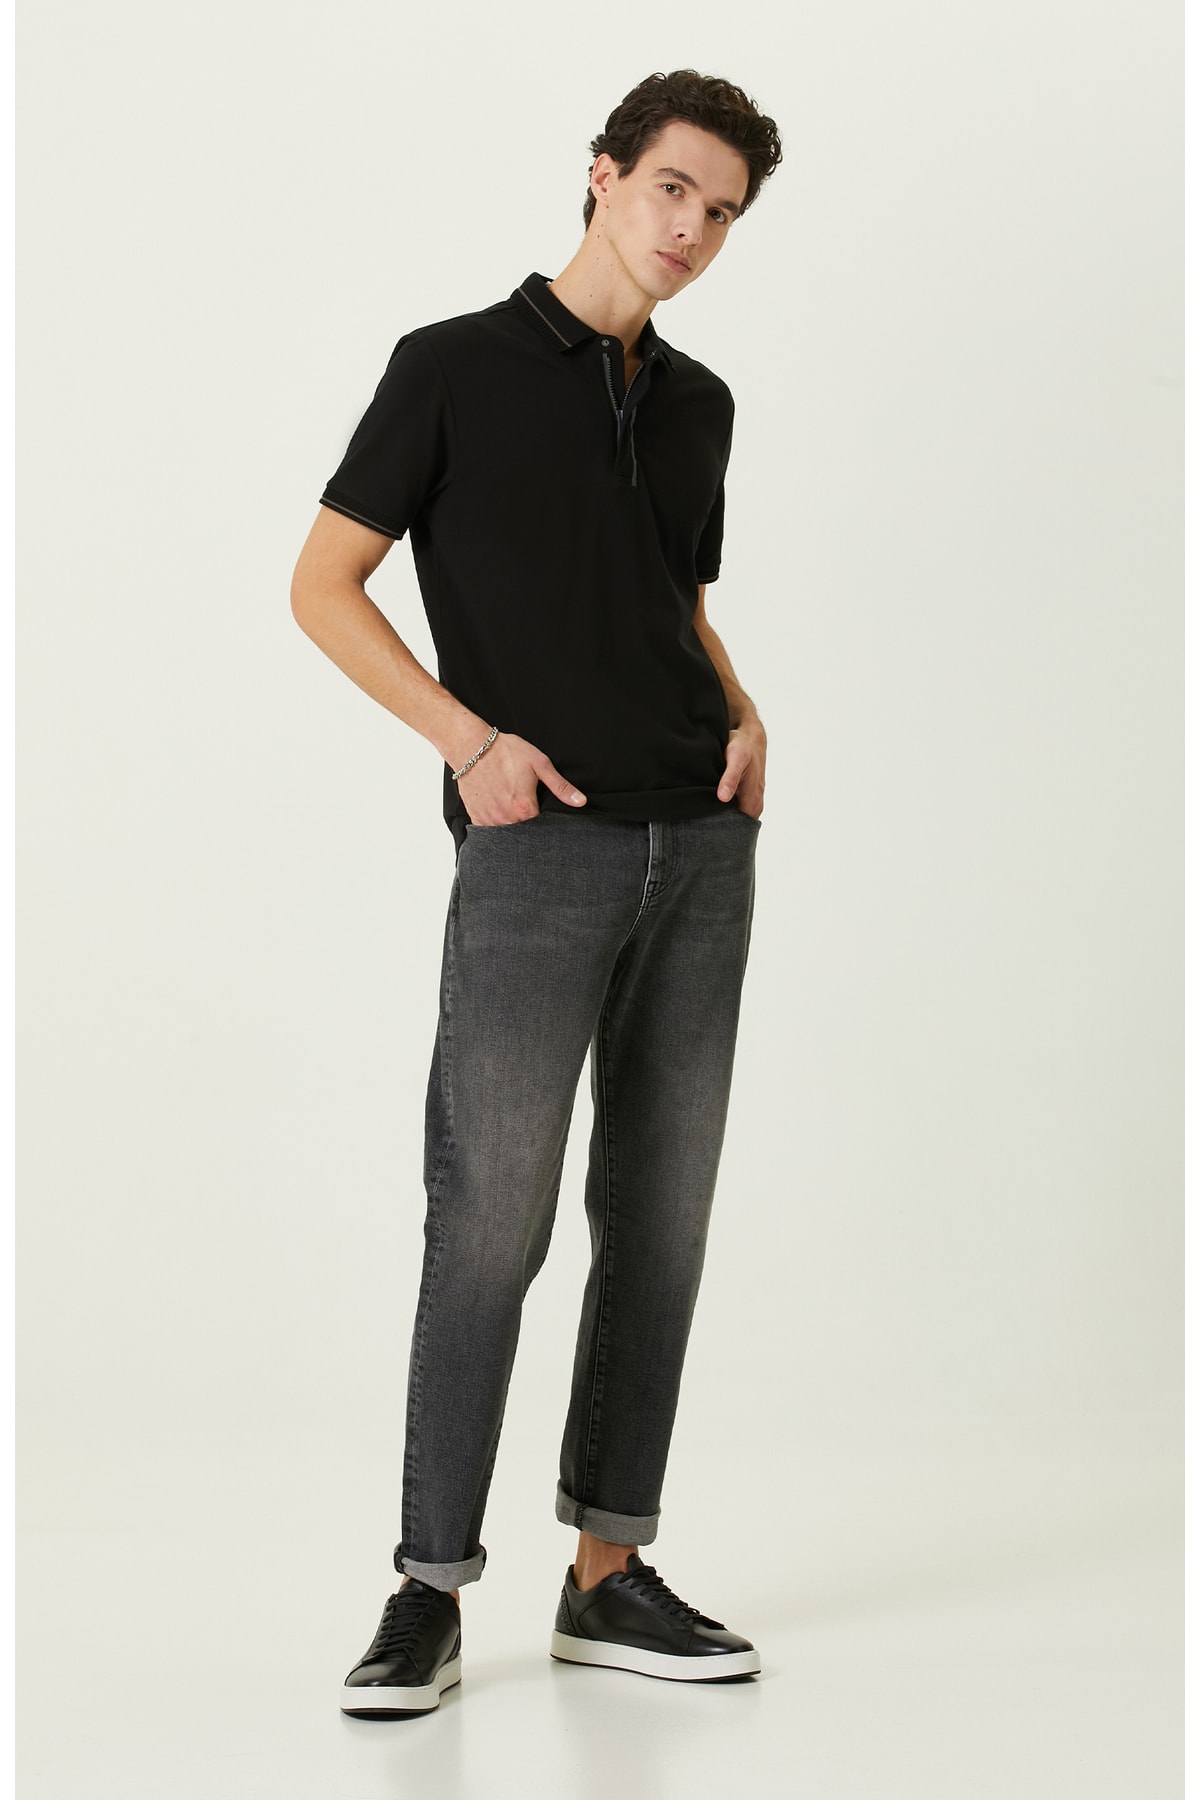 Прямые джинсовые брюки антрацитового цвета Network, серый фото